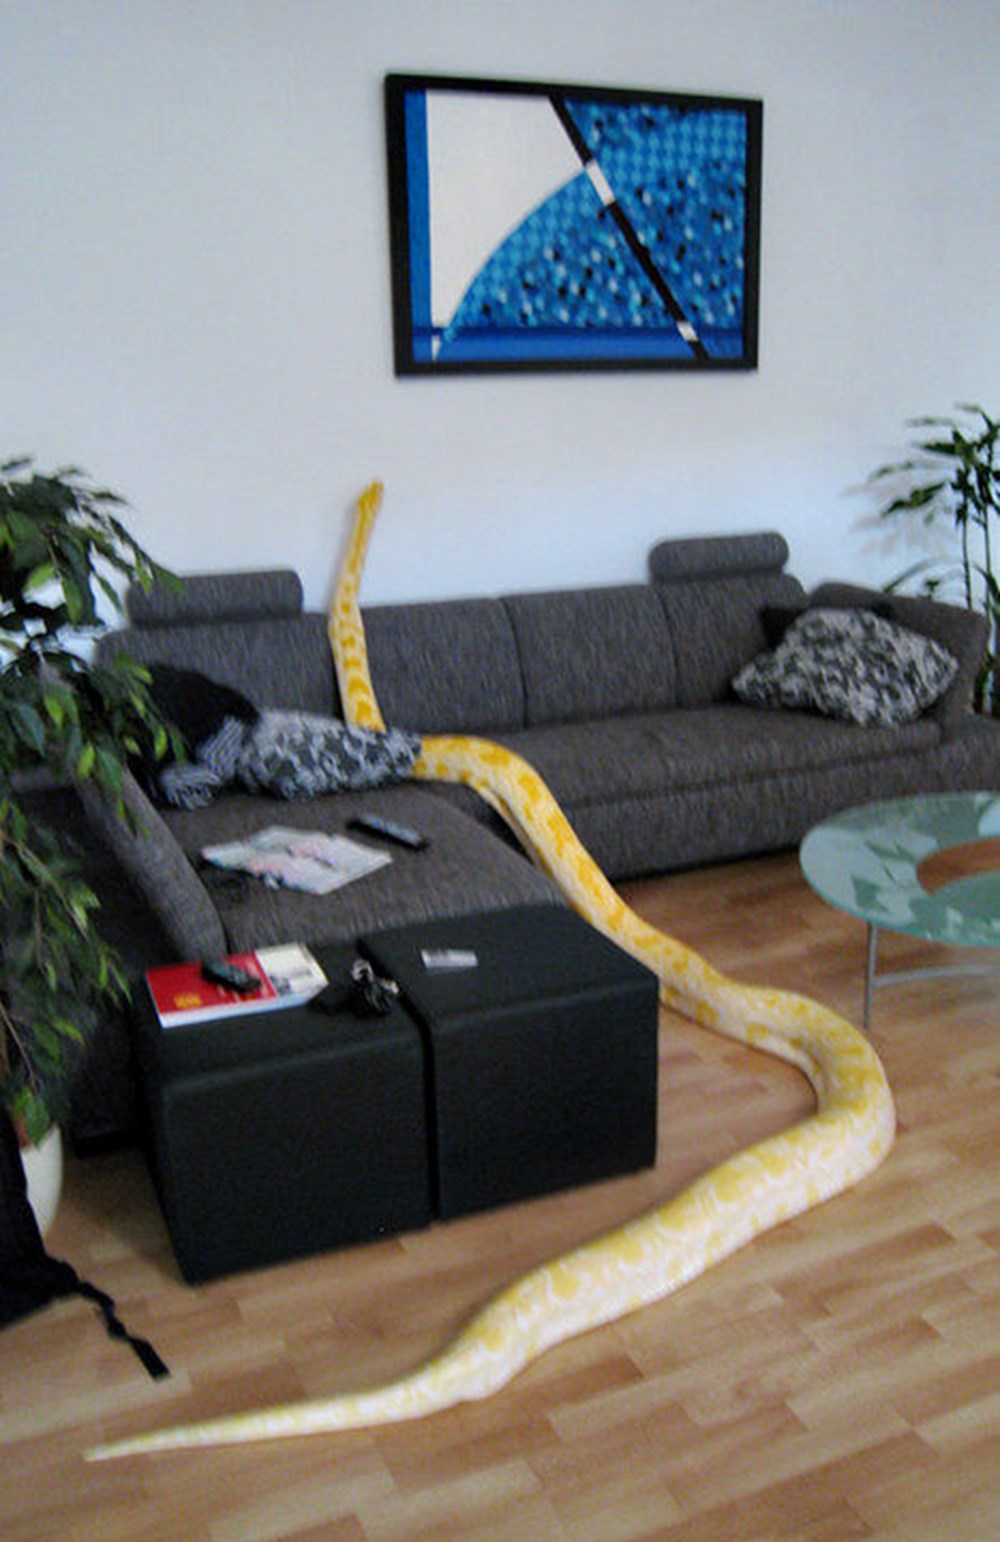 Завести дома змею. Питон питомец. Змеи в доме. Змея в квартире. Питон змеи домашние.